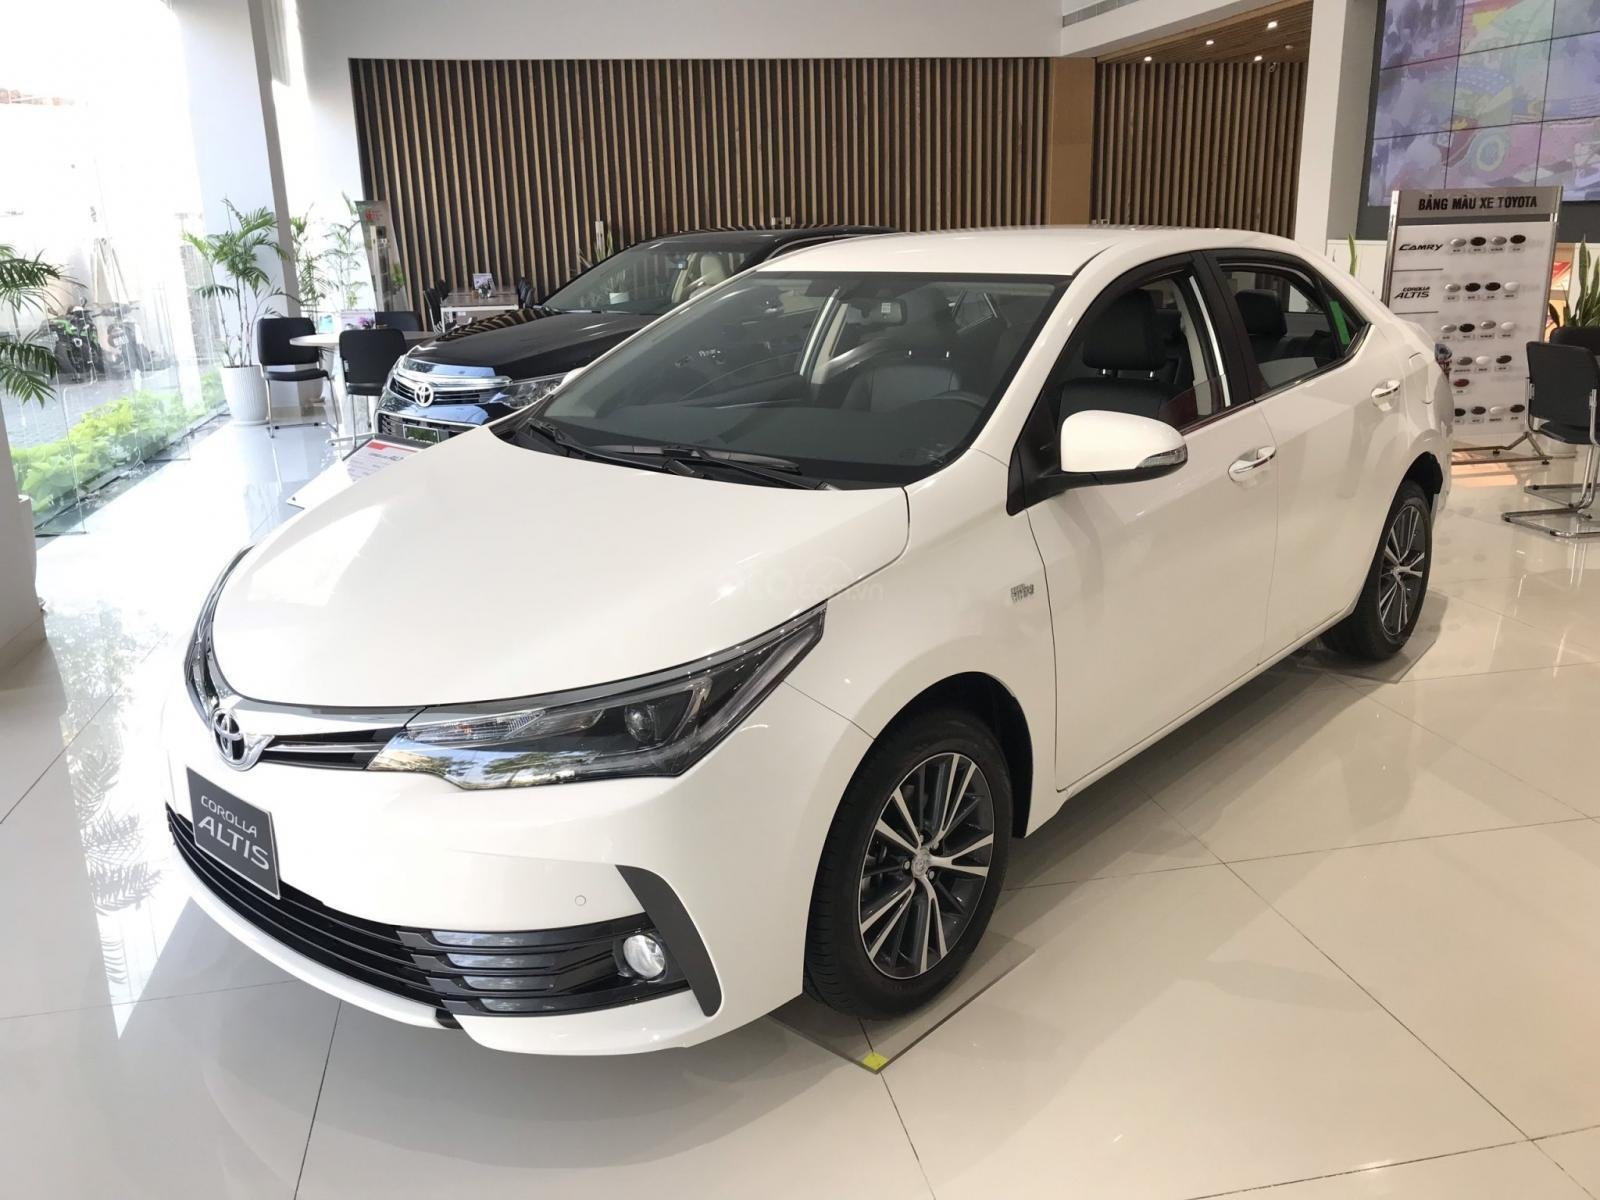 Toyota khuyến mại tháng 12/2019 lên đến 100 triệu đồng, quyết chiếm thị phần tháng chót của năm 2a